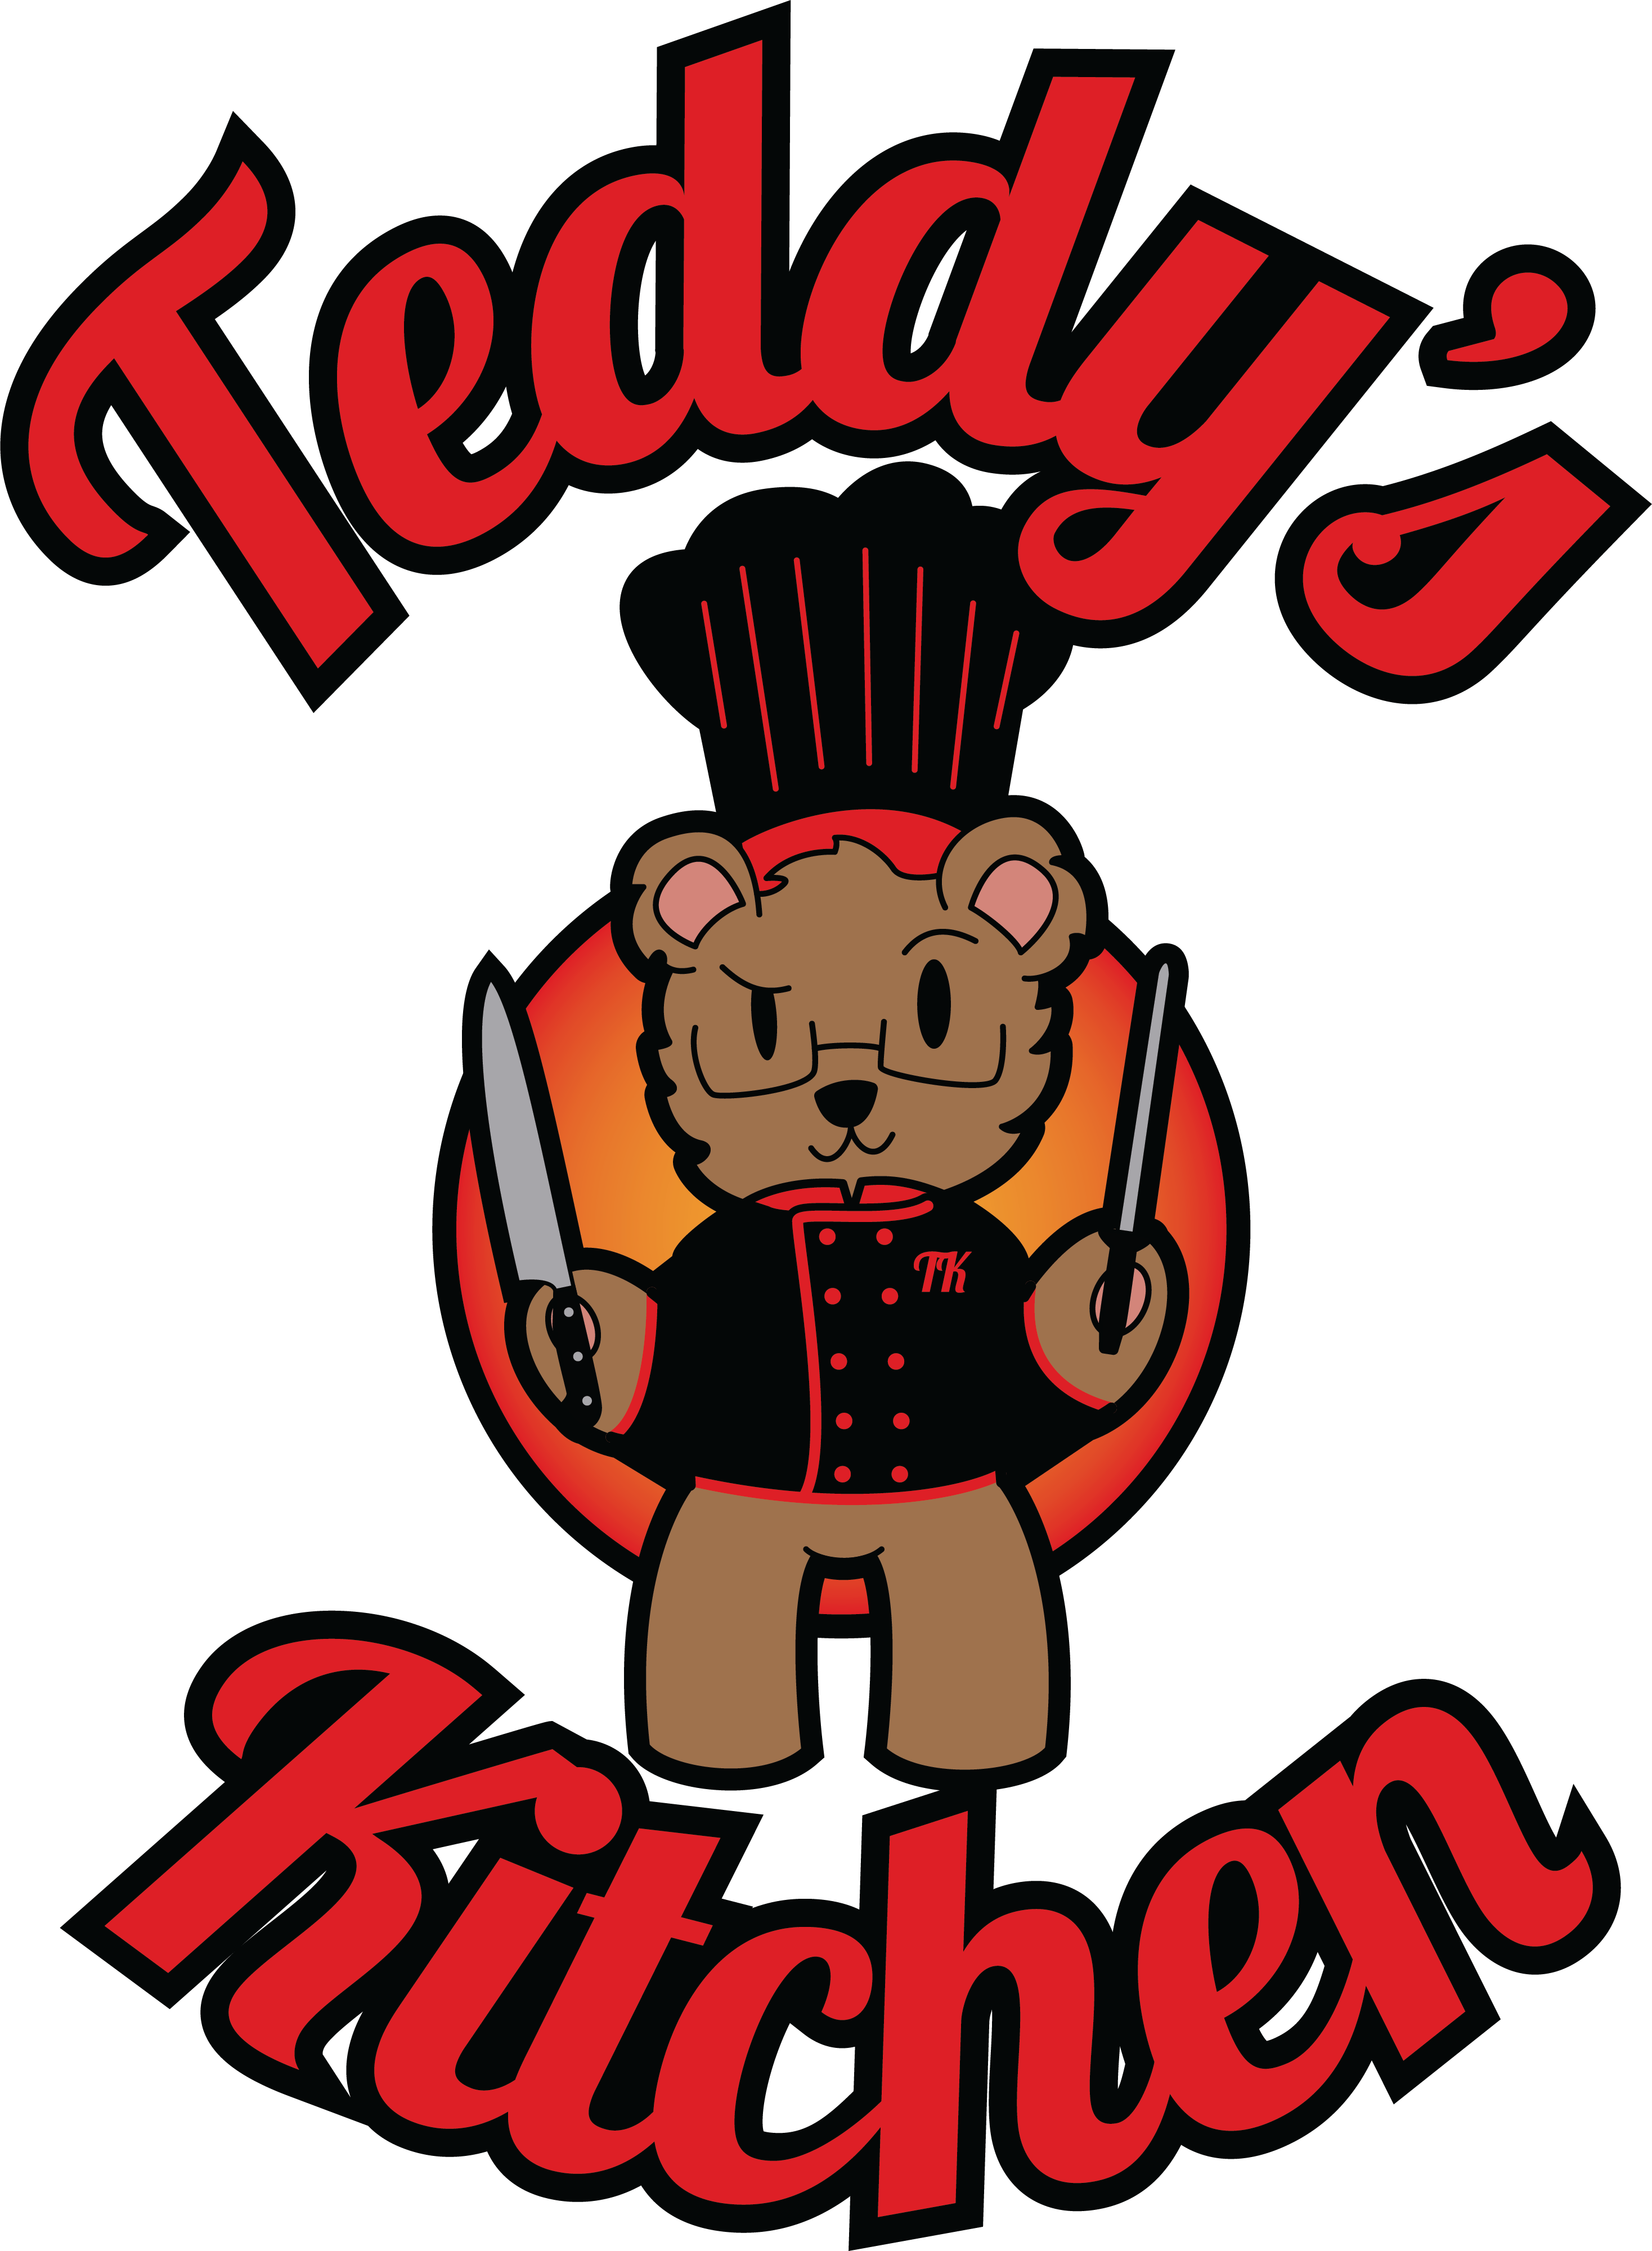 Teddy’s Kitchen